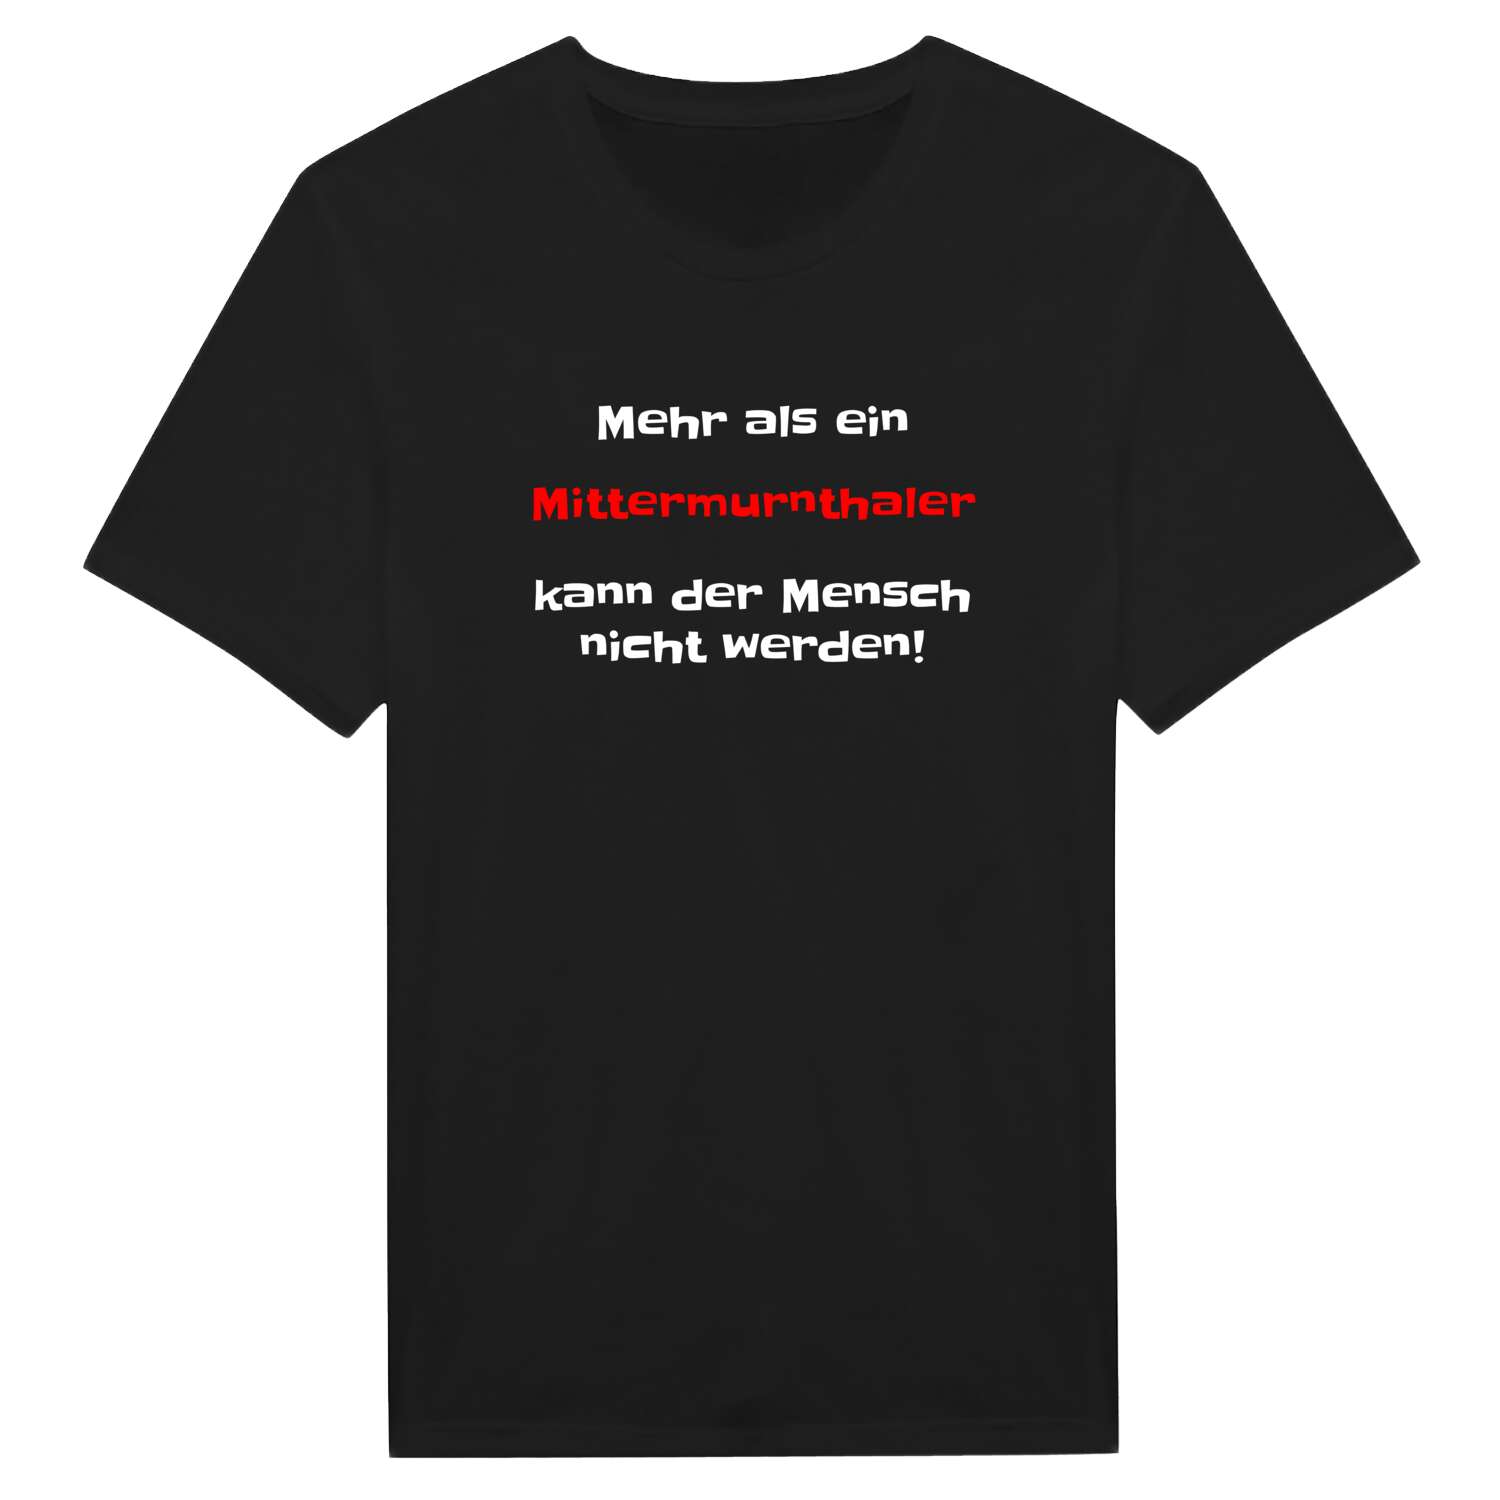 Mittermurnthal T-Shirt »Mehr als ein«